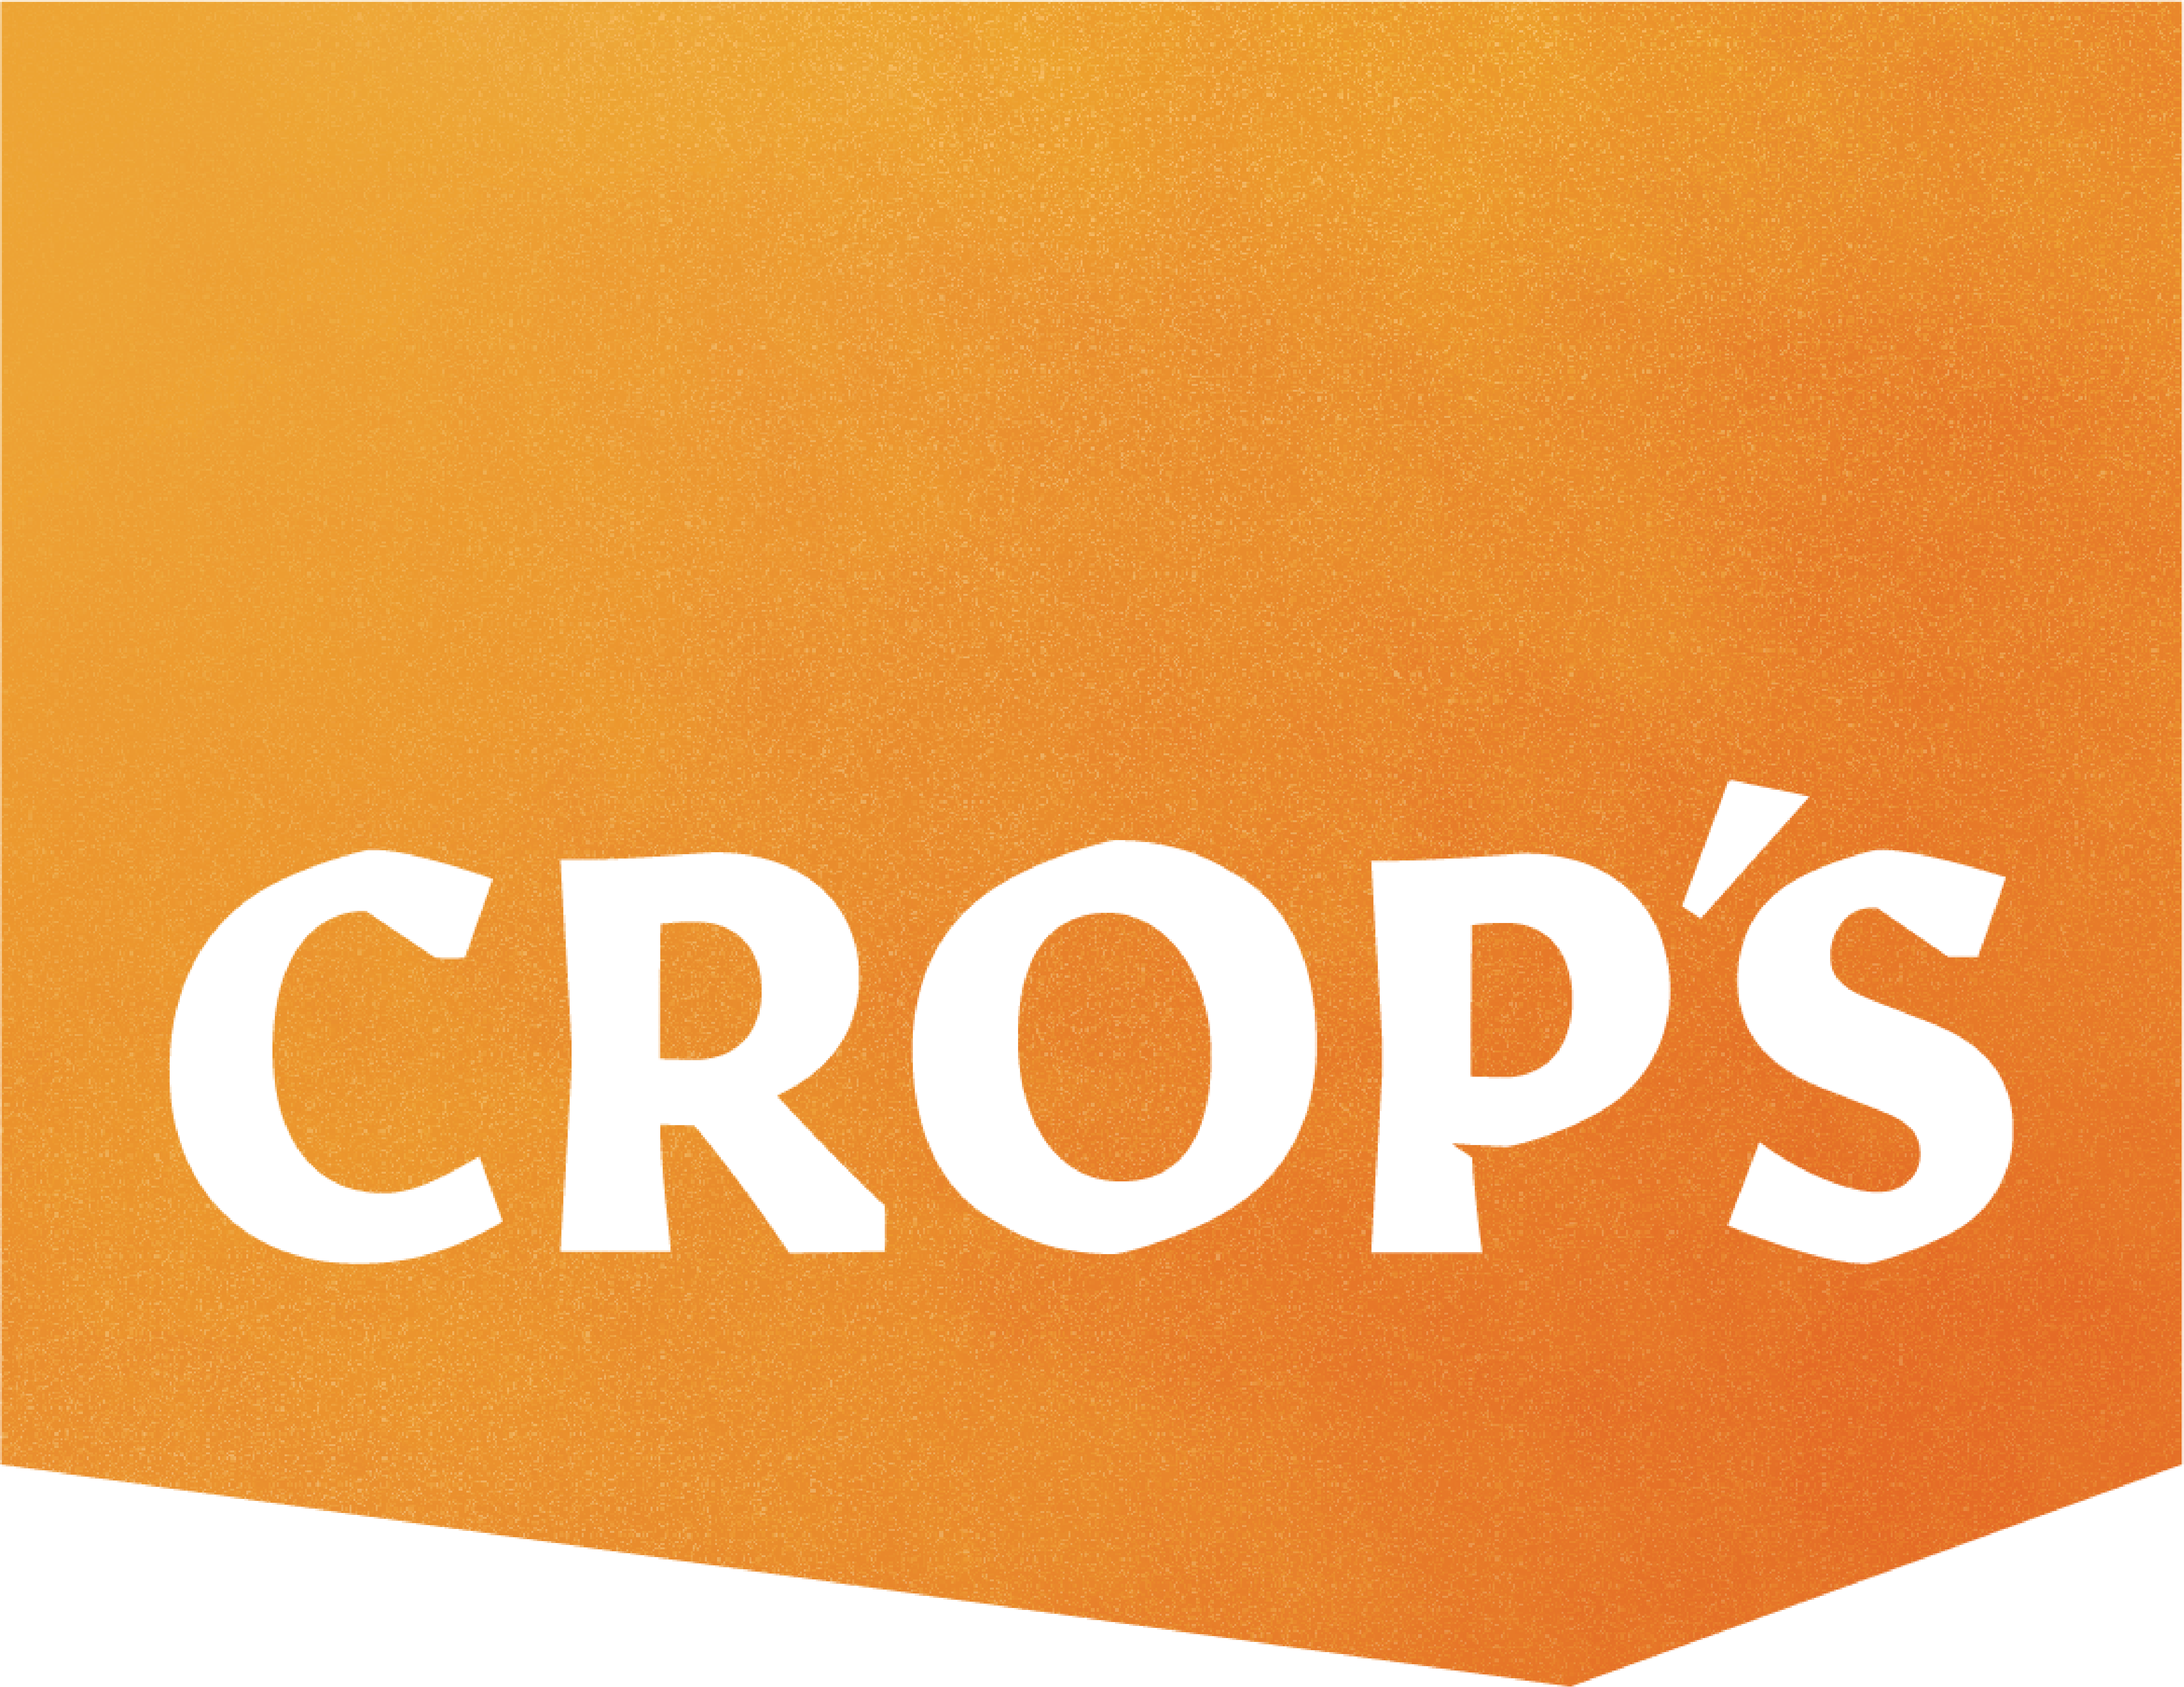 CROP'S logo